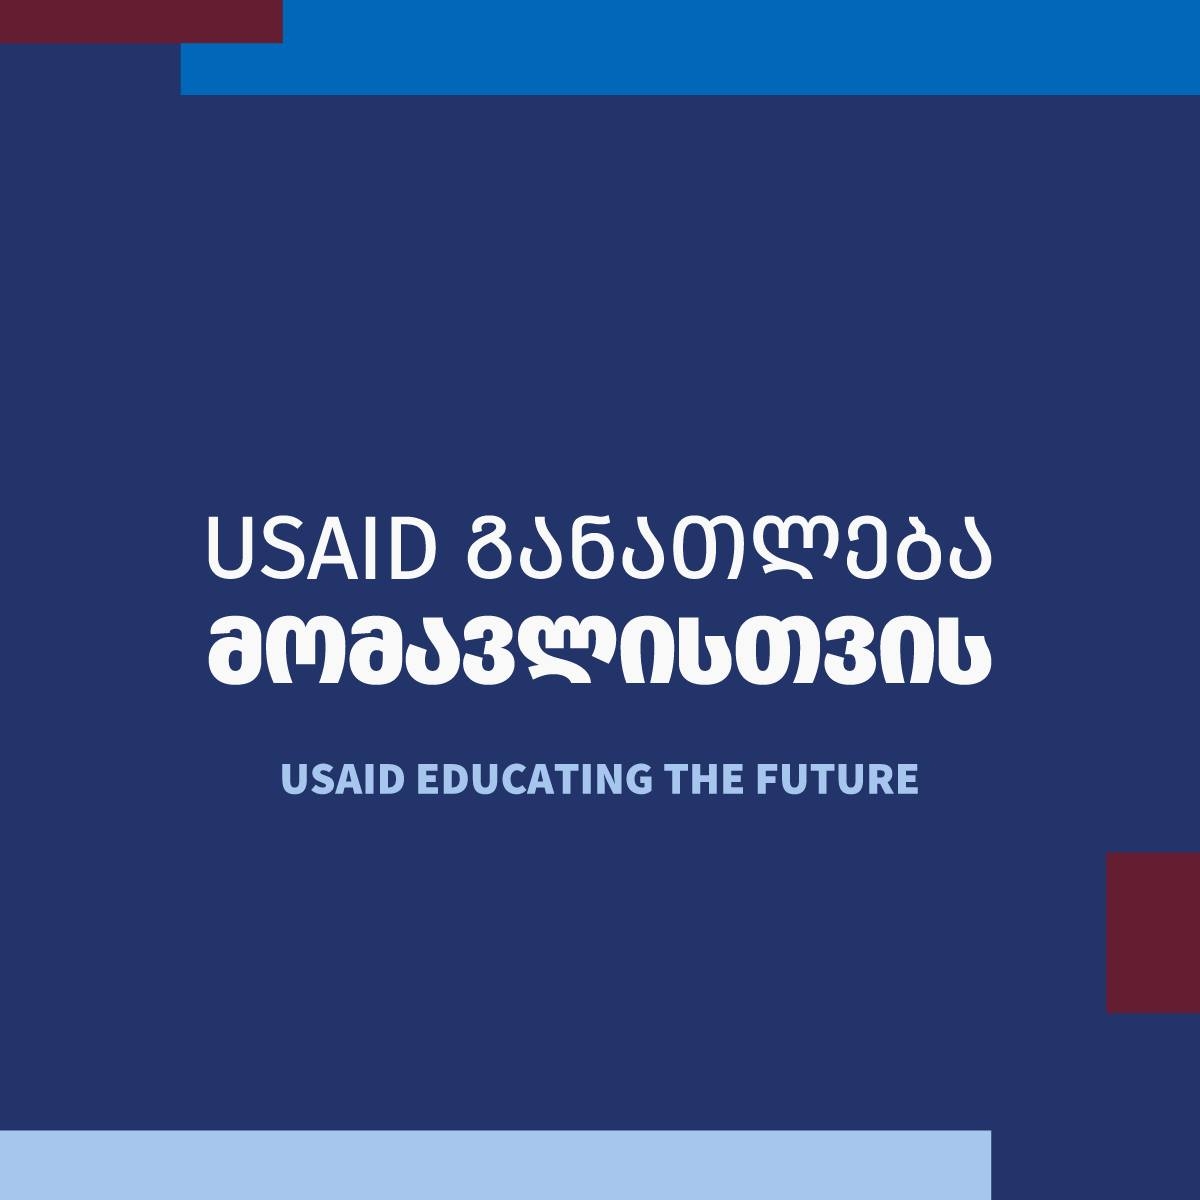 Educating The Future (USAID)